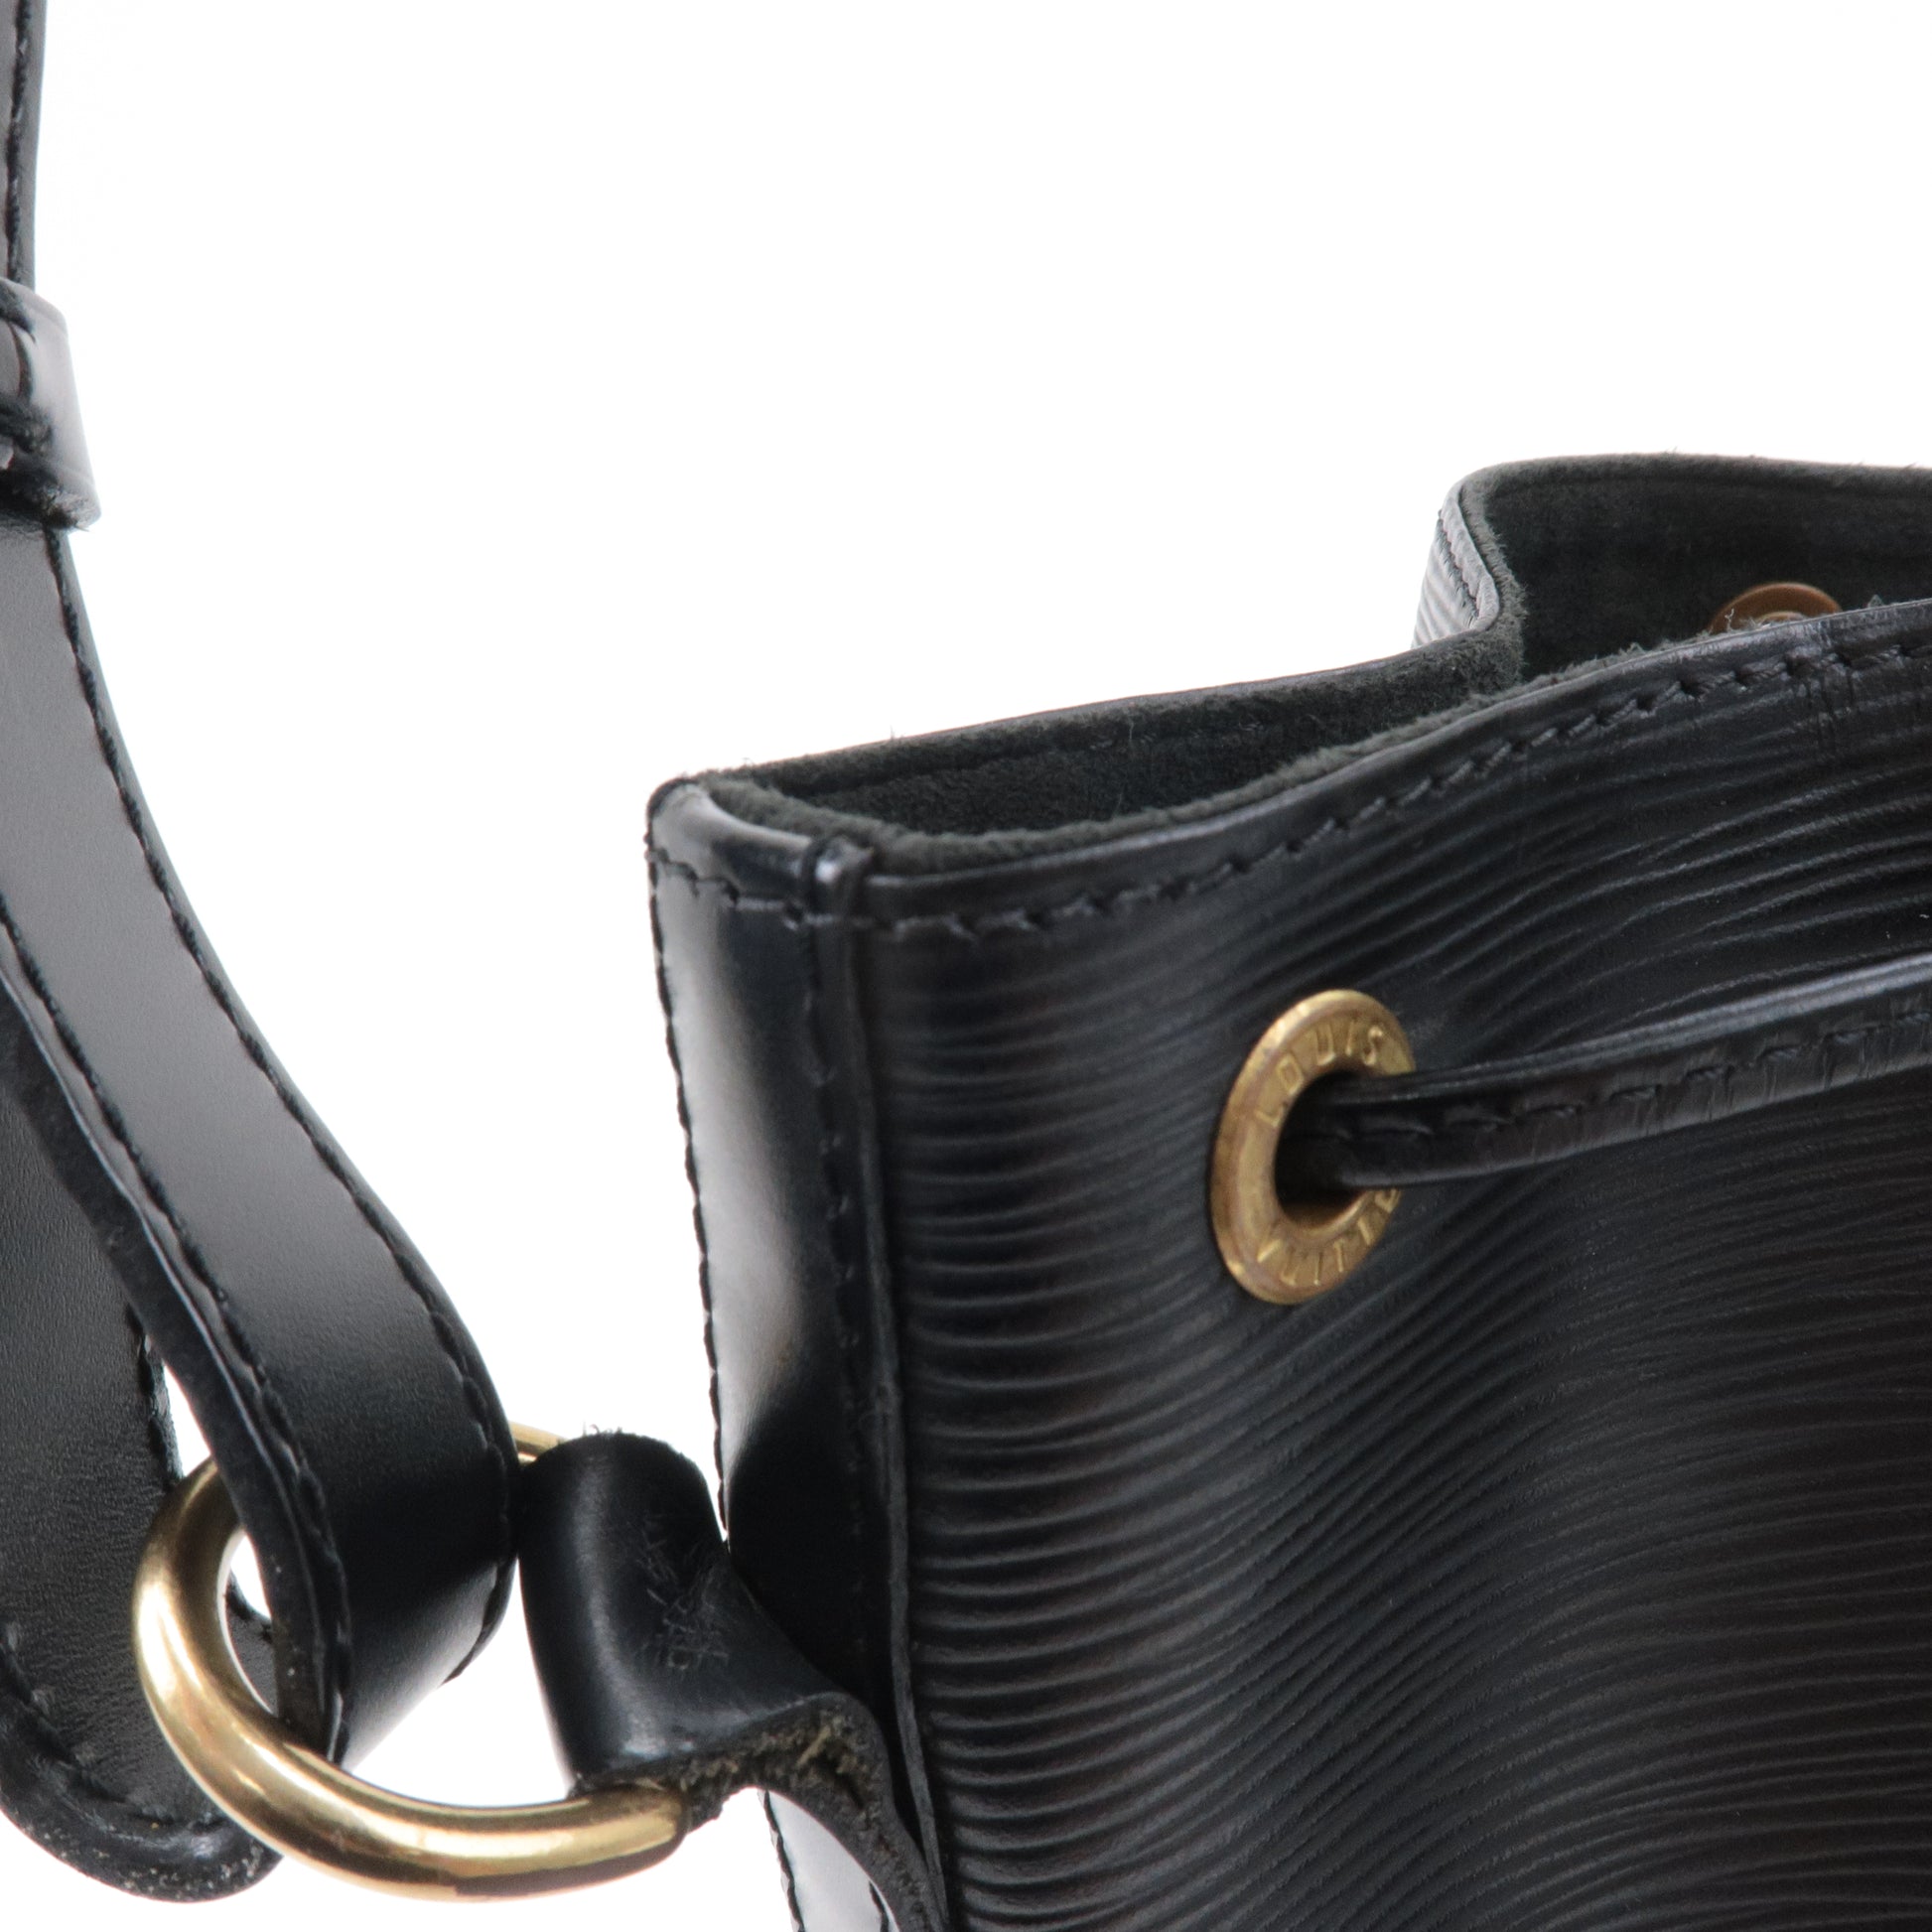 Louis Vuitton - Petit Noé Epi Leather Noir